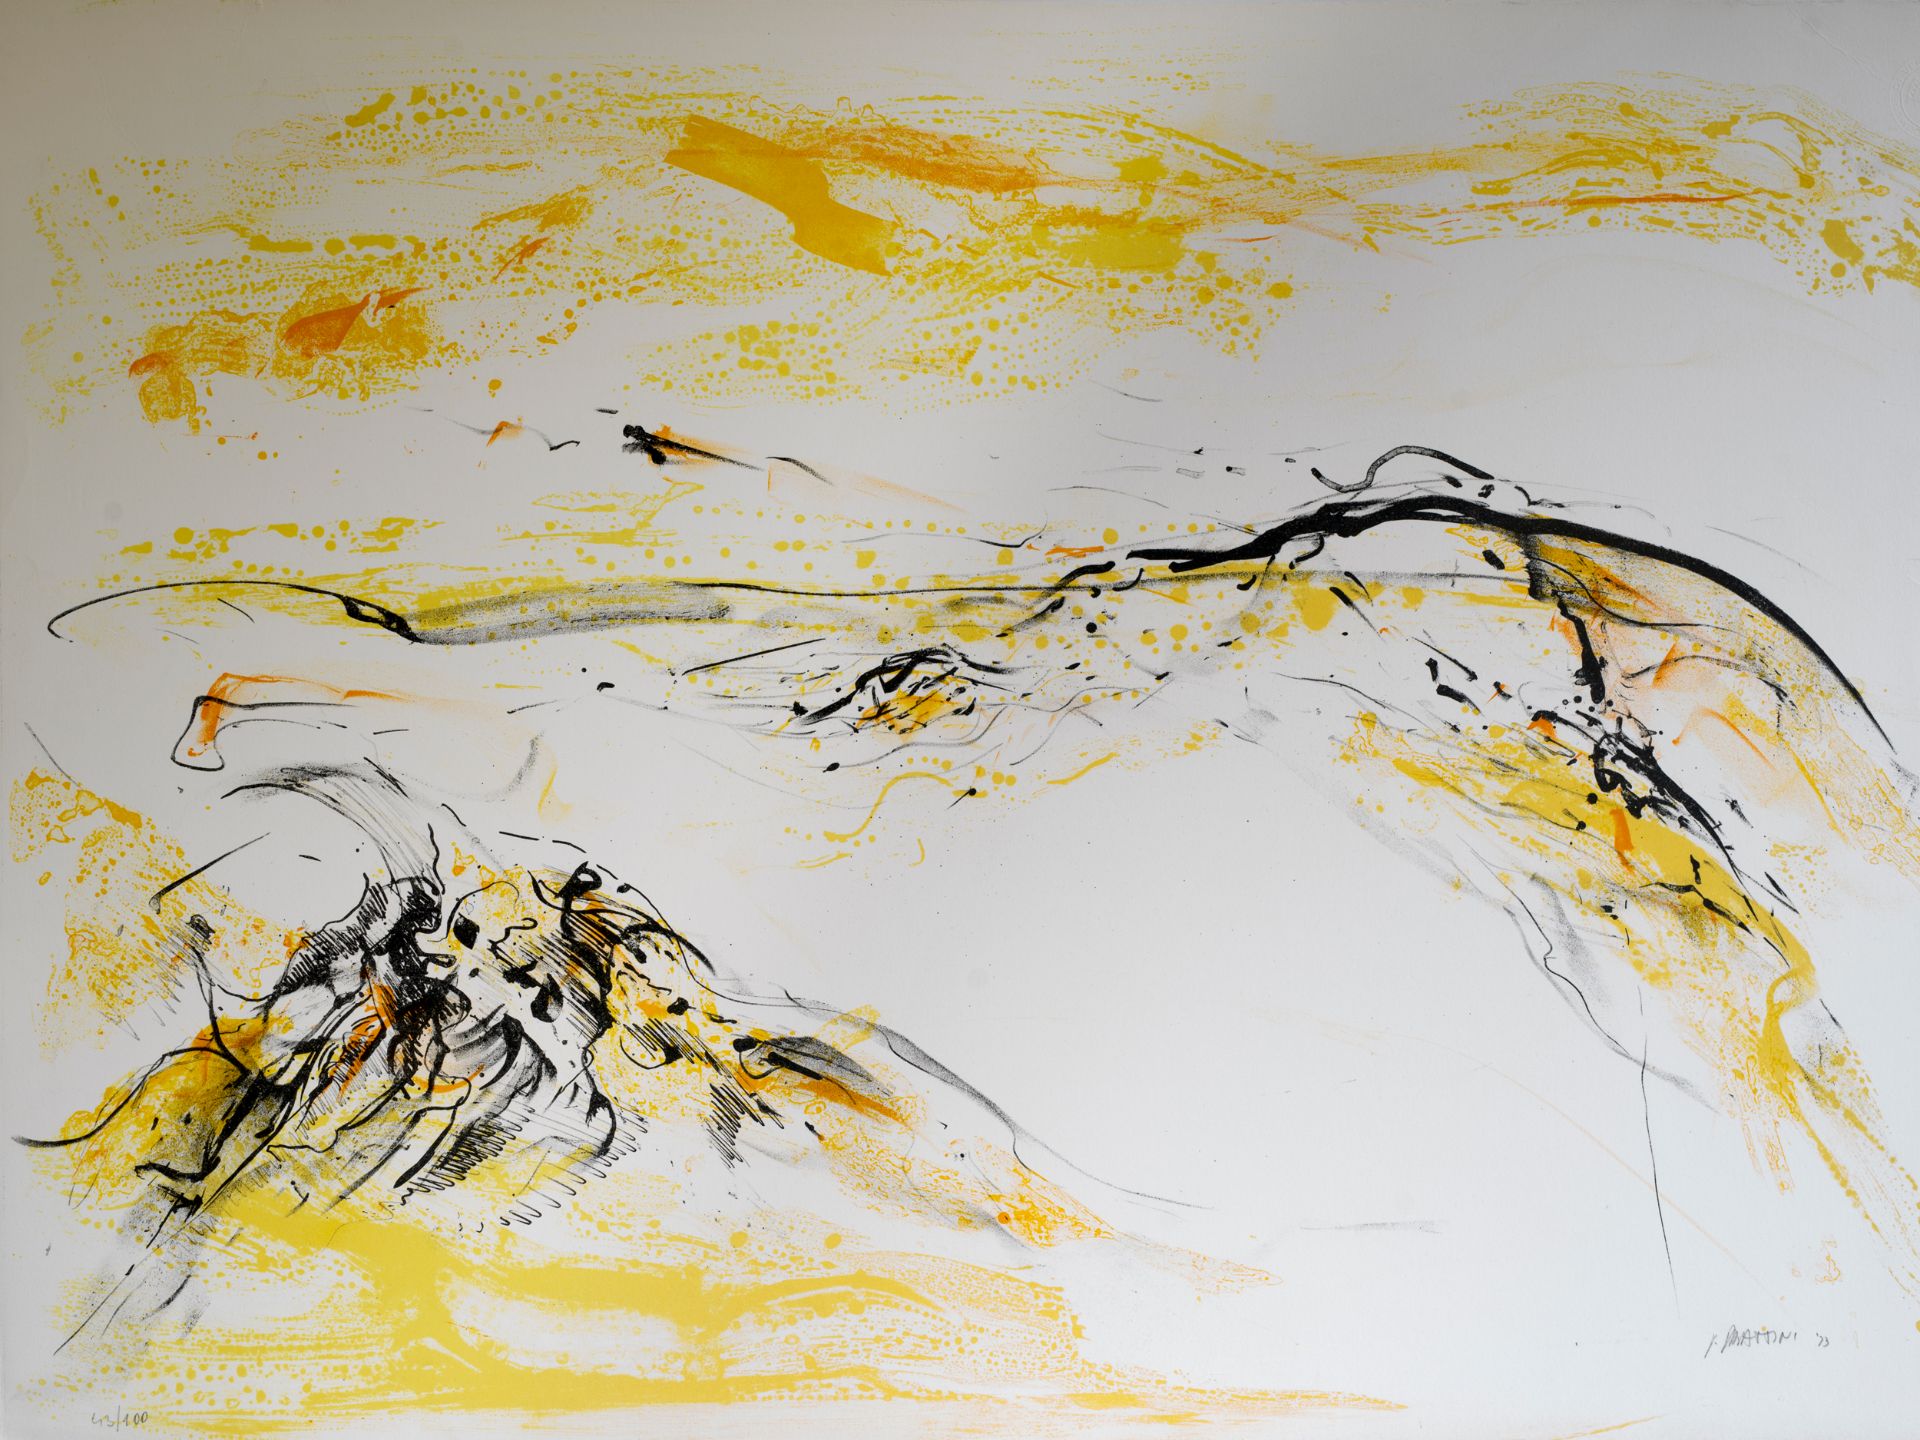 Unbekannter Künstler, „Abstrakte Komposition in Gelb“, 1973